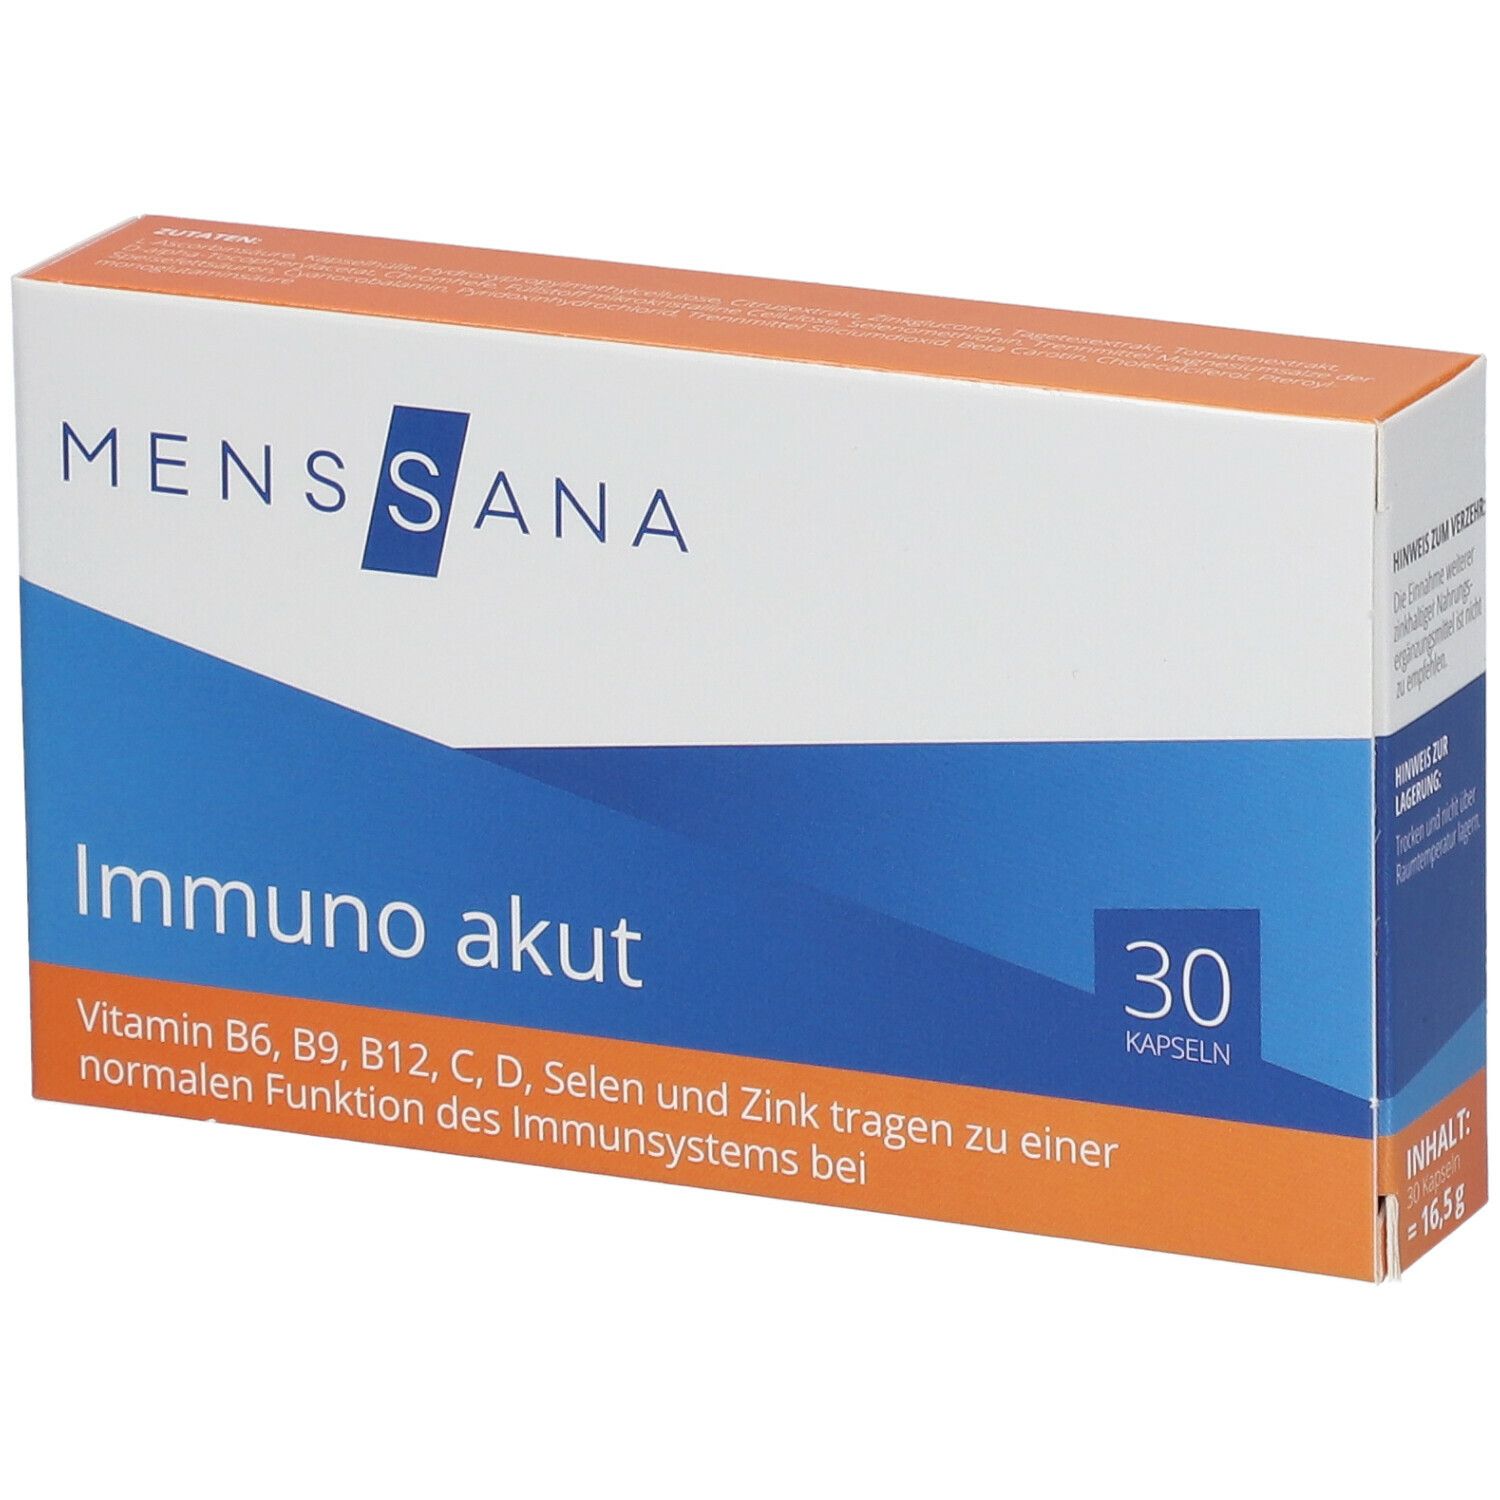 MensSana Immuno akut